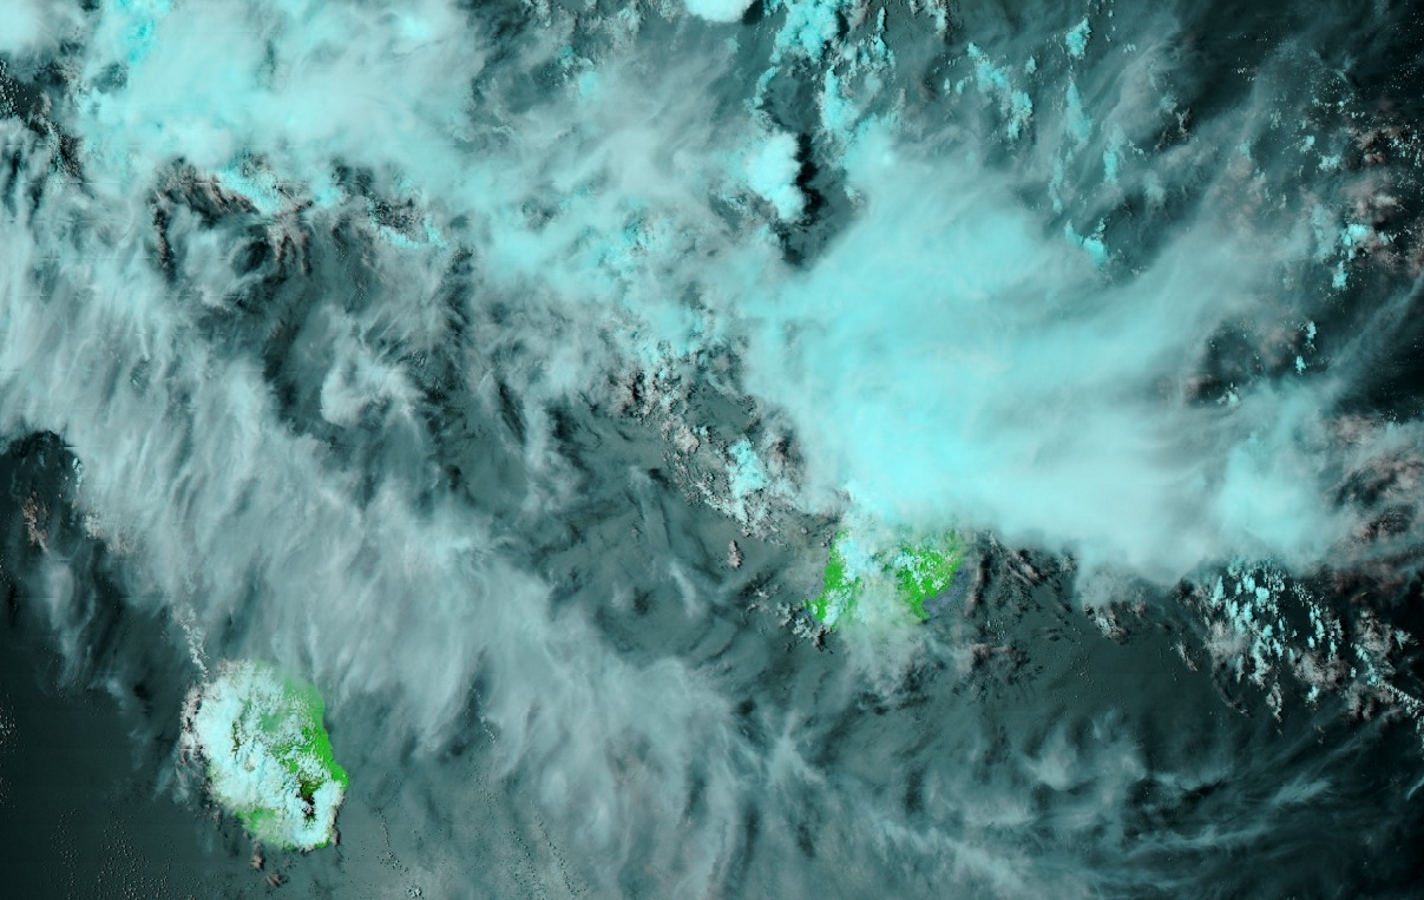 Noaa20 à 13h40. Le nord de Maurice sous les averses. Bancs de nuages élevés au nord de la Réunion.